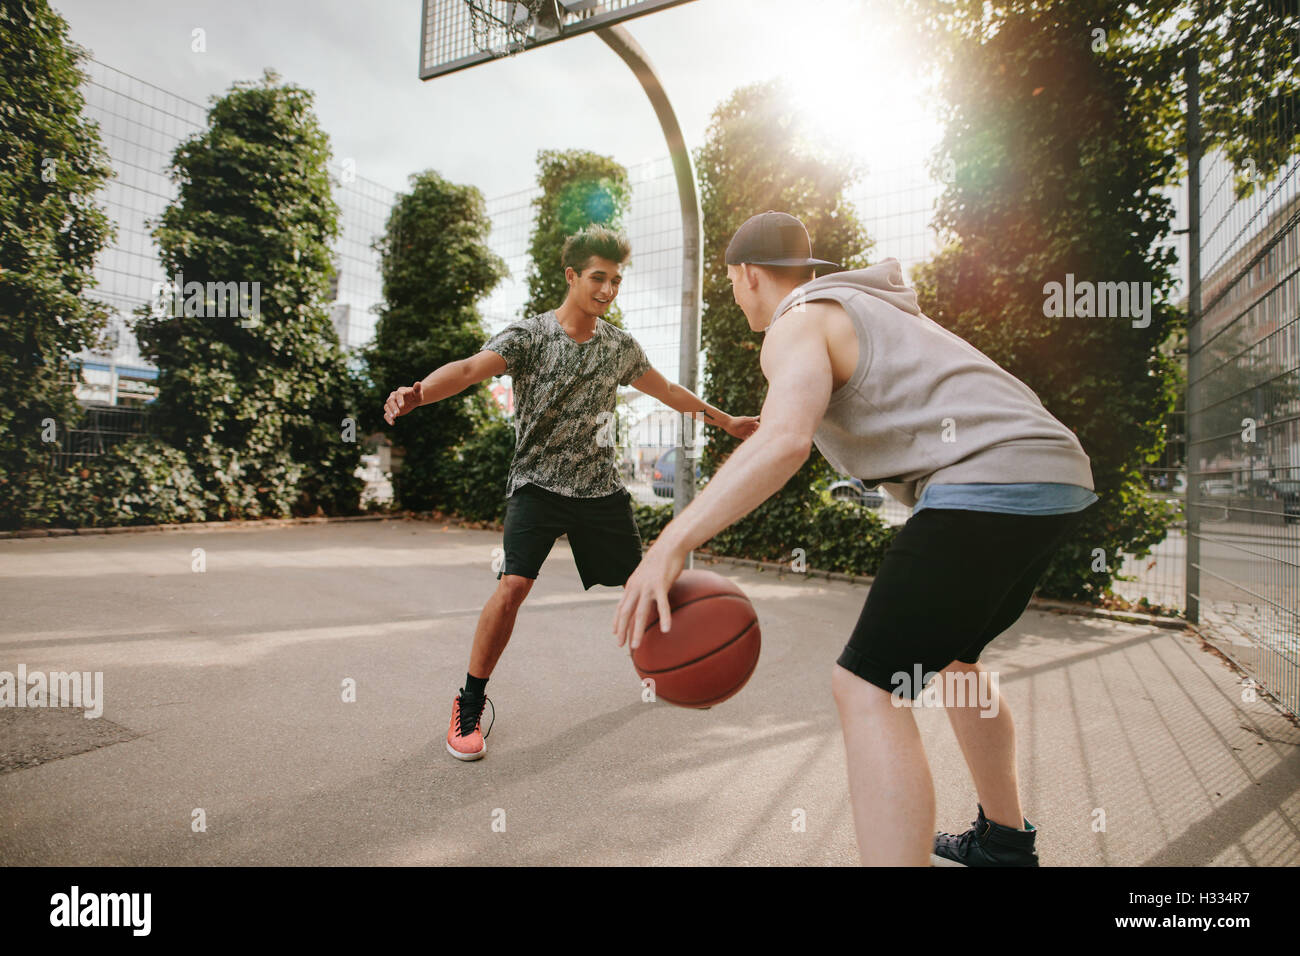 Junge Freunde zusammen zu spielen Basketball, junge vor Netto blockieren und andere dribbling den Ball auf Freiplatz. Stockfoto